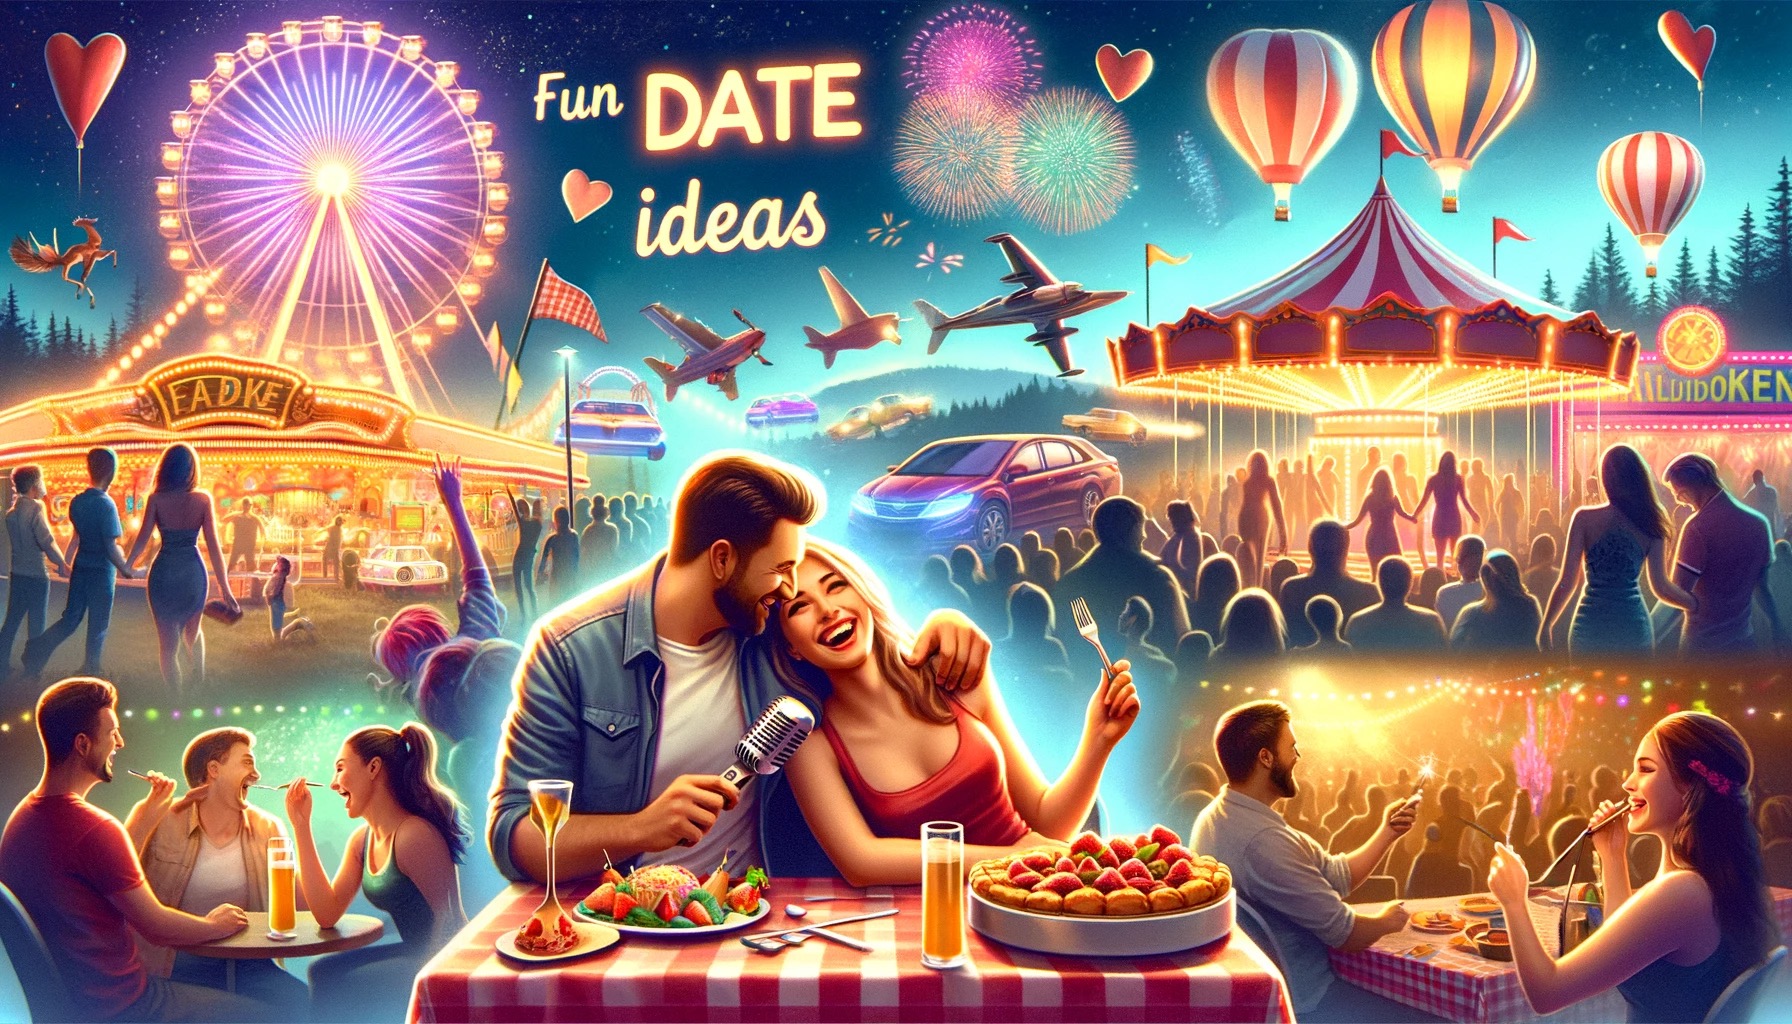 fun date ideas